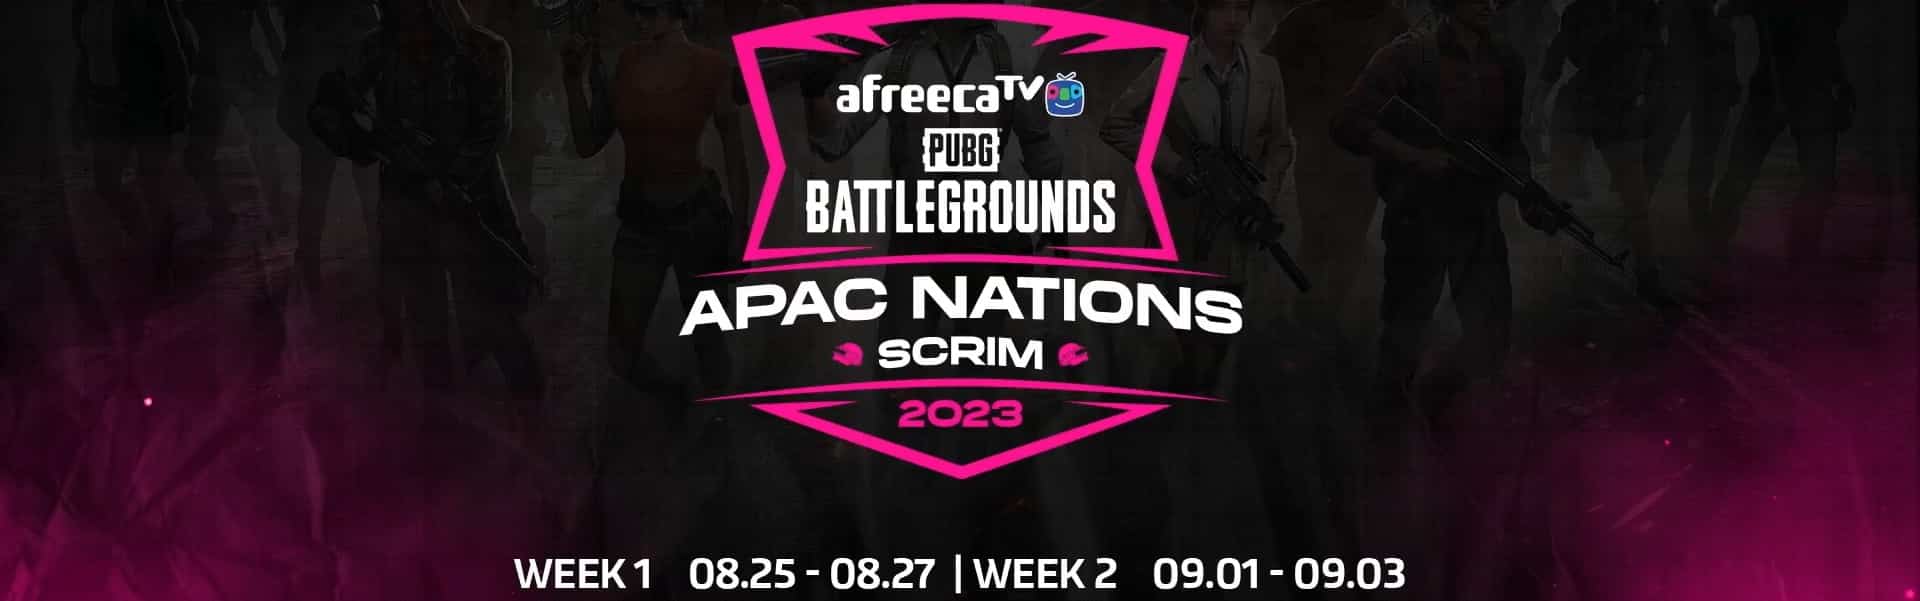 ข่าวเกม : AfreecaTV ประกาศจัดงานแข่งขัน PUBG APAC Nations Scrim 2023